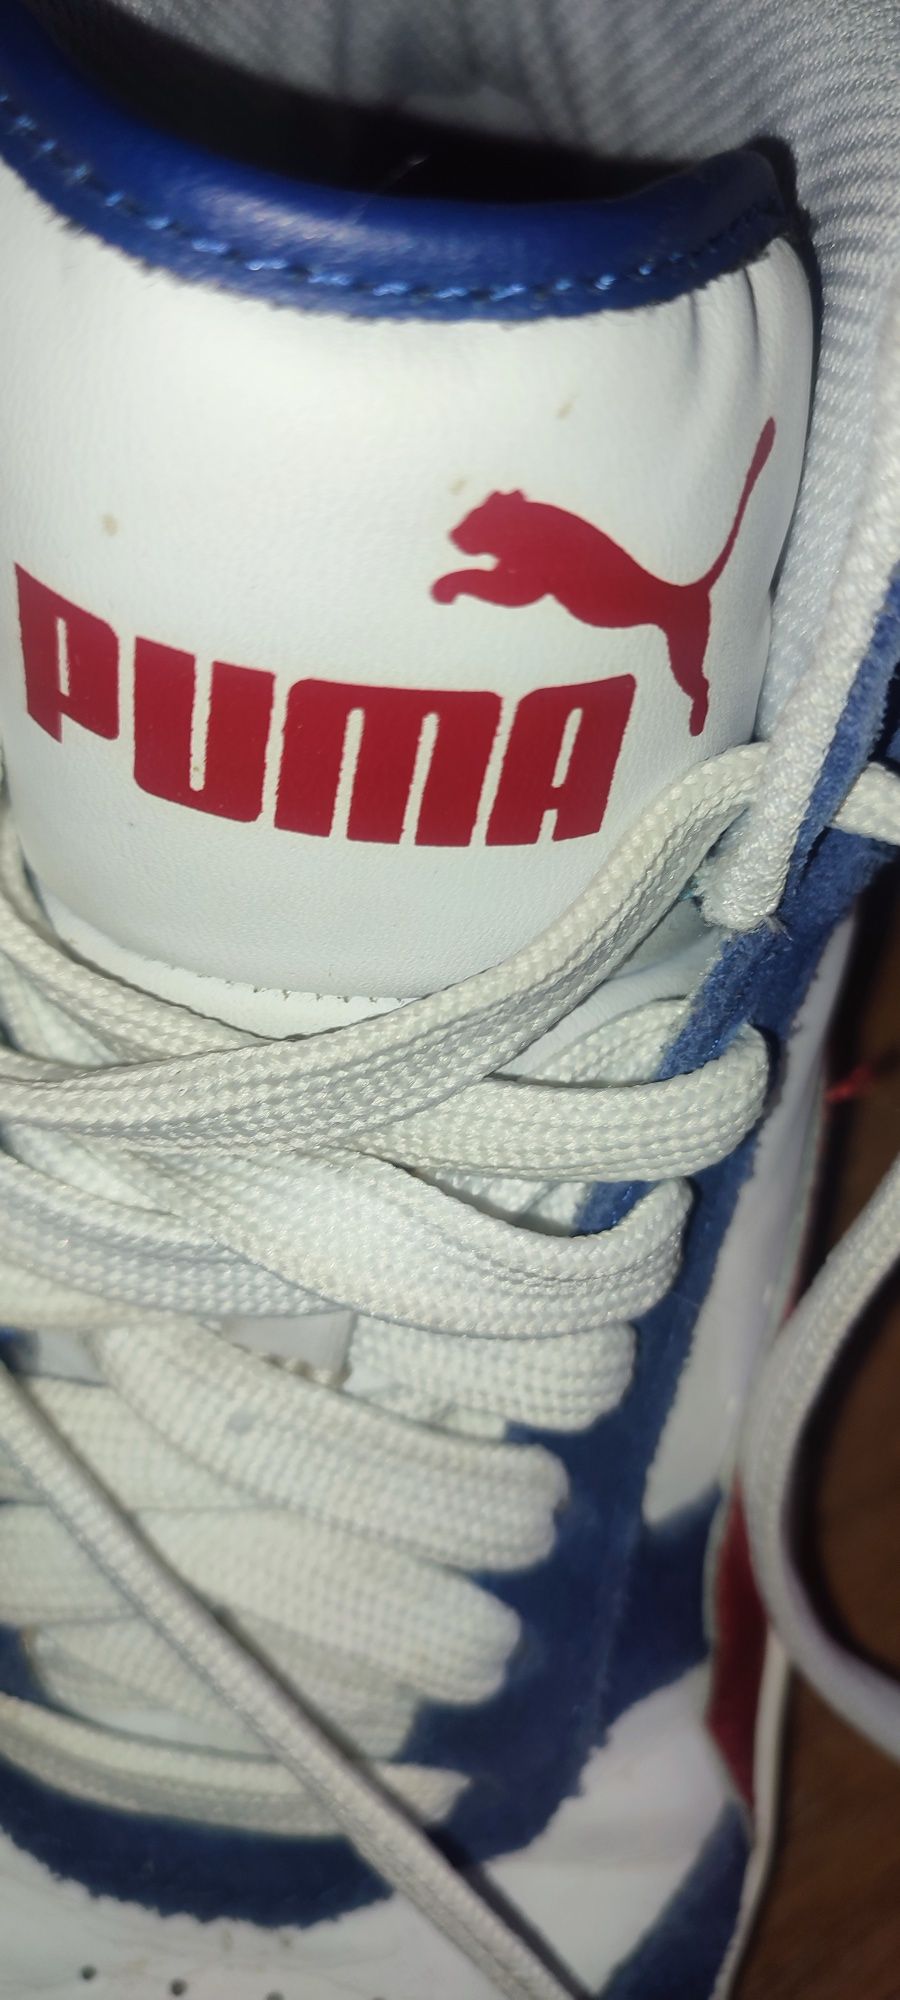 Oryginalne buty Puma rozm 38.5 wkładka  24.5 cm